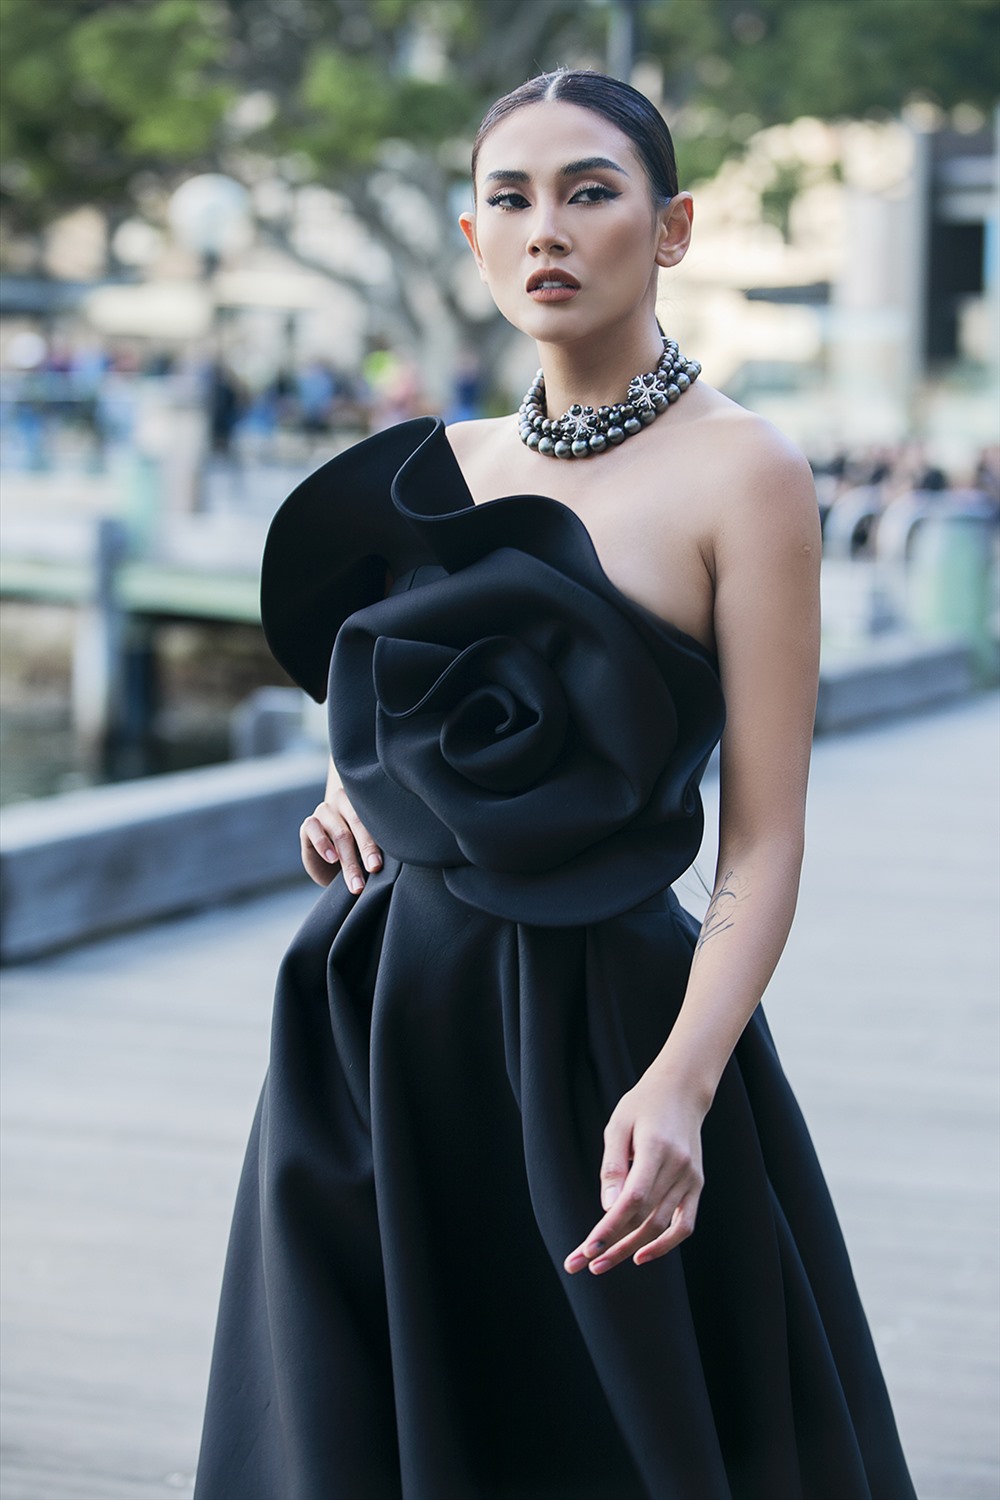 Nữ siêu mẫu xuất hiện đầy quyến rũ trong chiếc đầm dài màu đen, có hoạ tiết hoa 3D to ở ngực váy. Đường catwalk khá dài nhưng vẫn không thể làm cản trở những sải bước mạnh mẽ, đầy nội lực và chuyên nghiệp của Võ Hoàng Yến. 